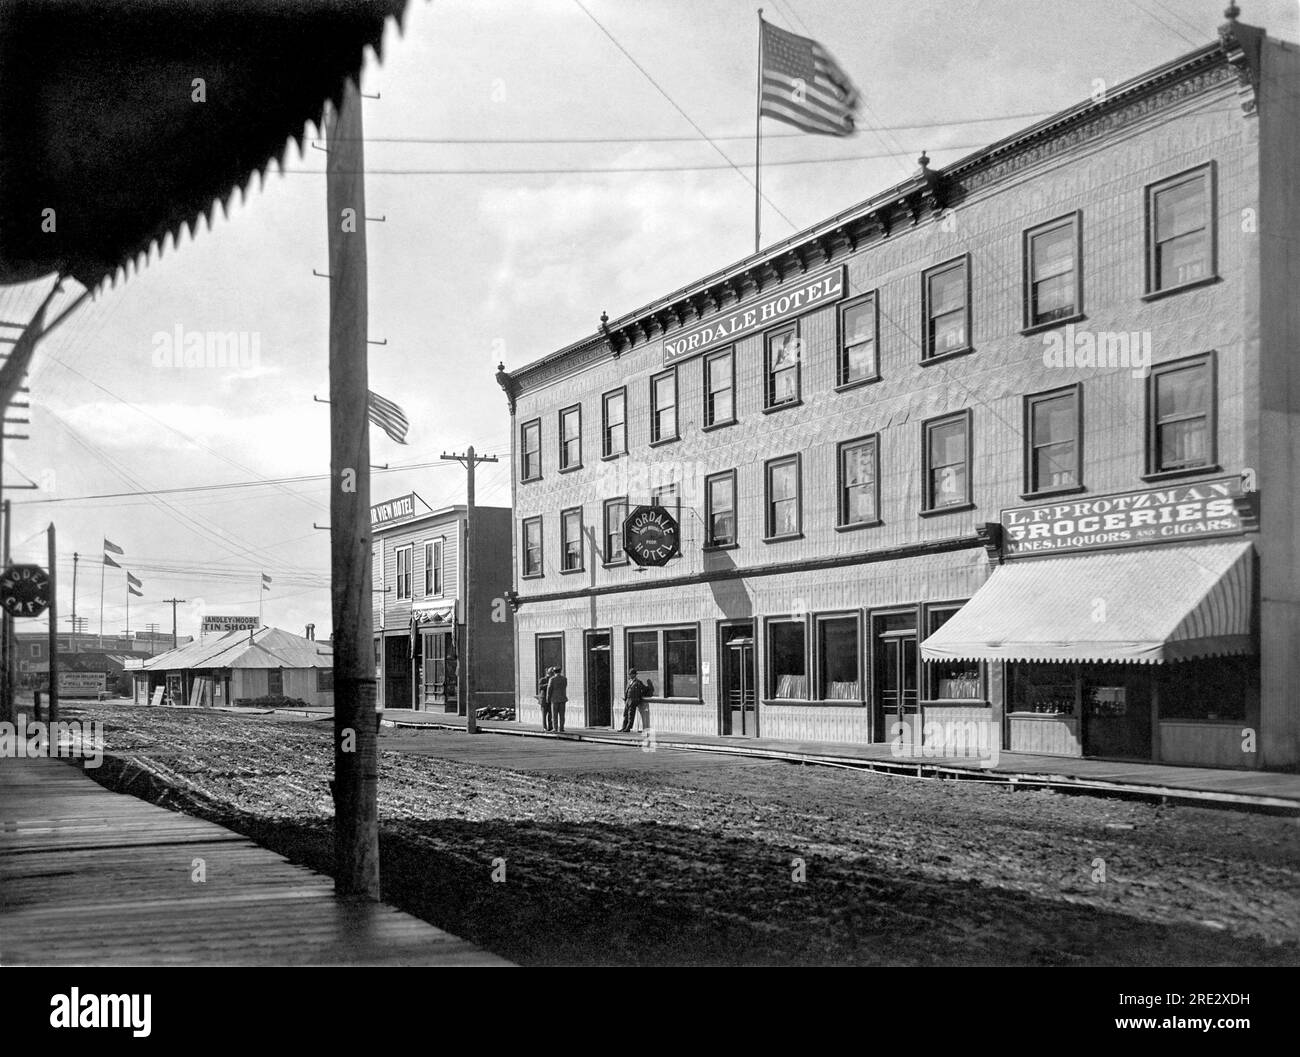 Fairbanks, Alaska: 20 agosto 1910 la strada principale di Fairbanks, Alaska, ancorata al Nordale Hotel. Bruciò nel 1923, poco dopo che il presidente Harding vi rimase. Foto Stock